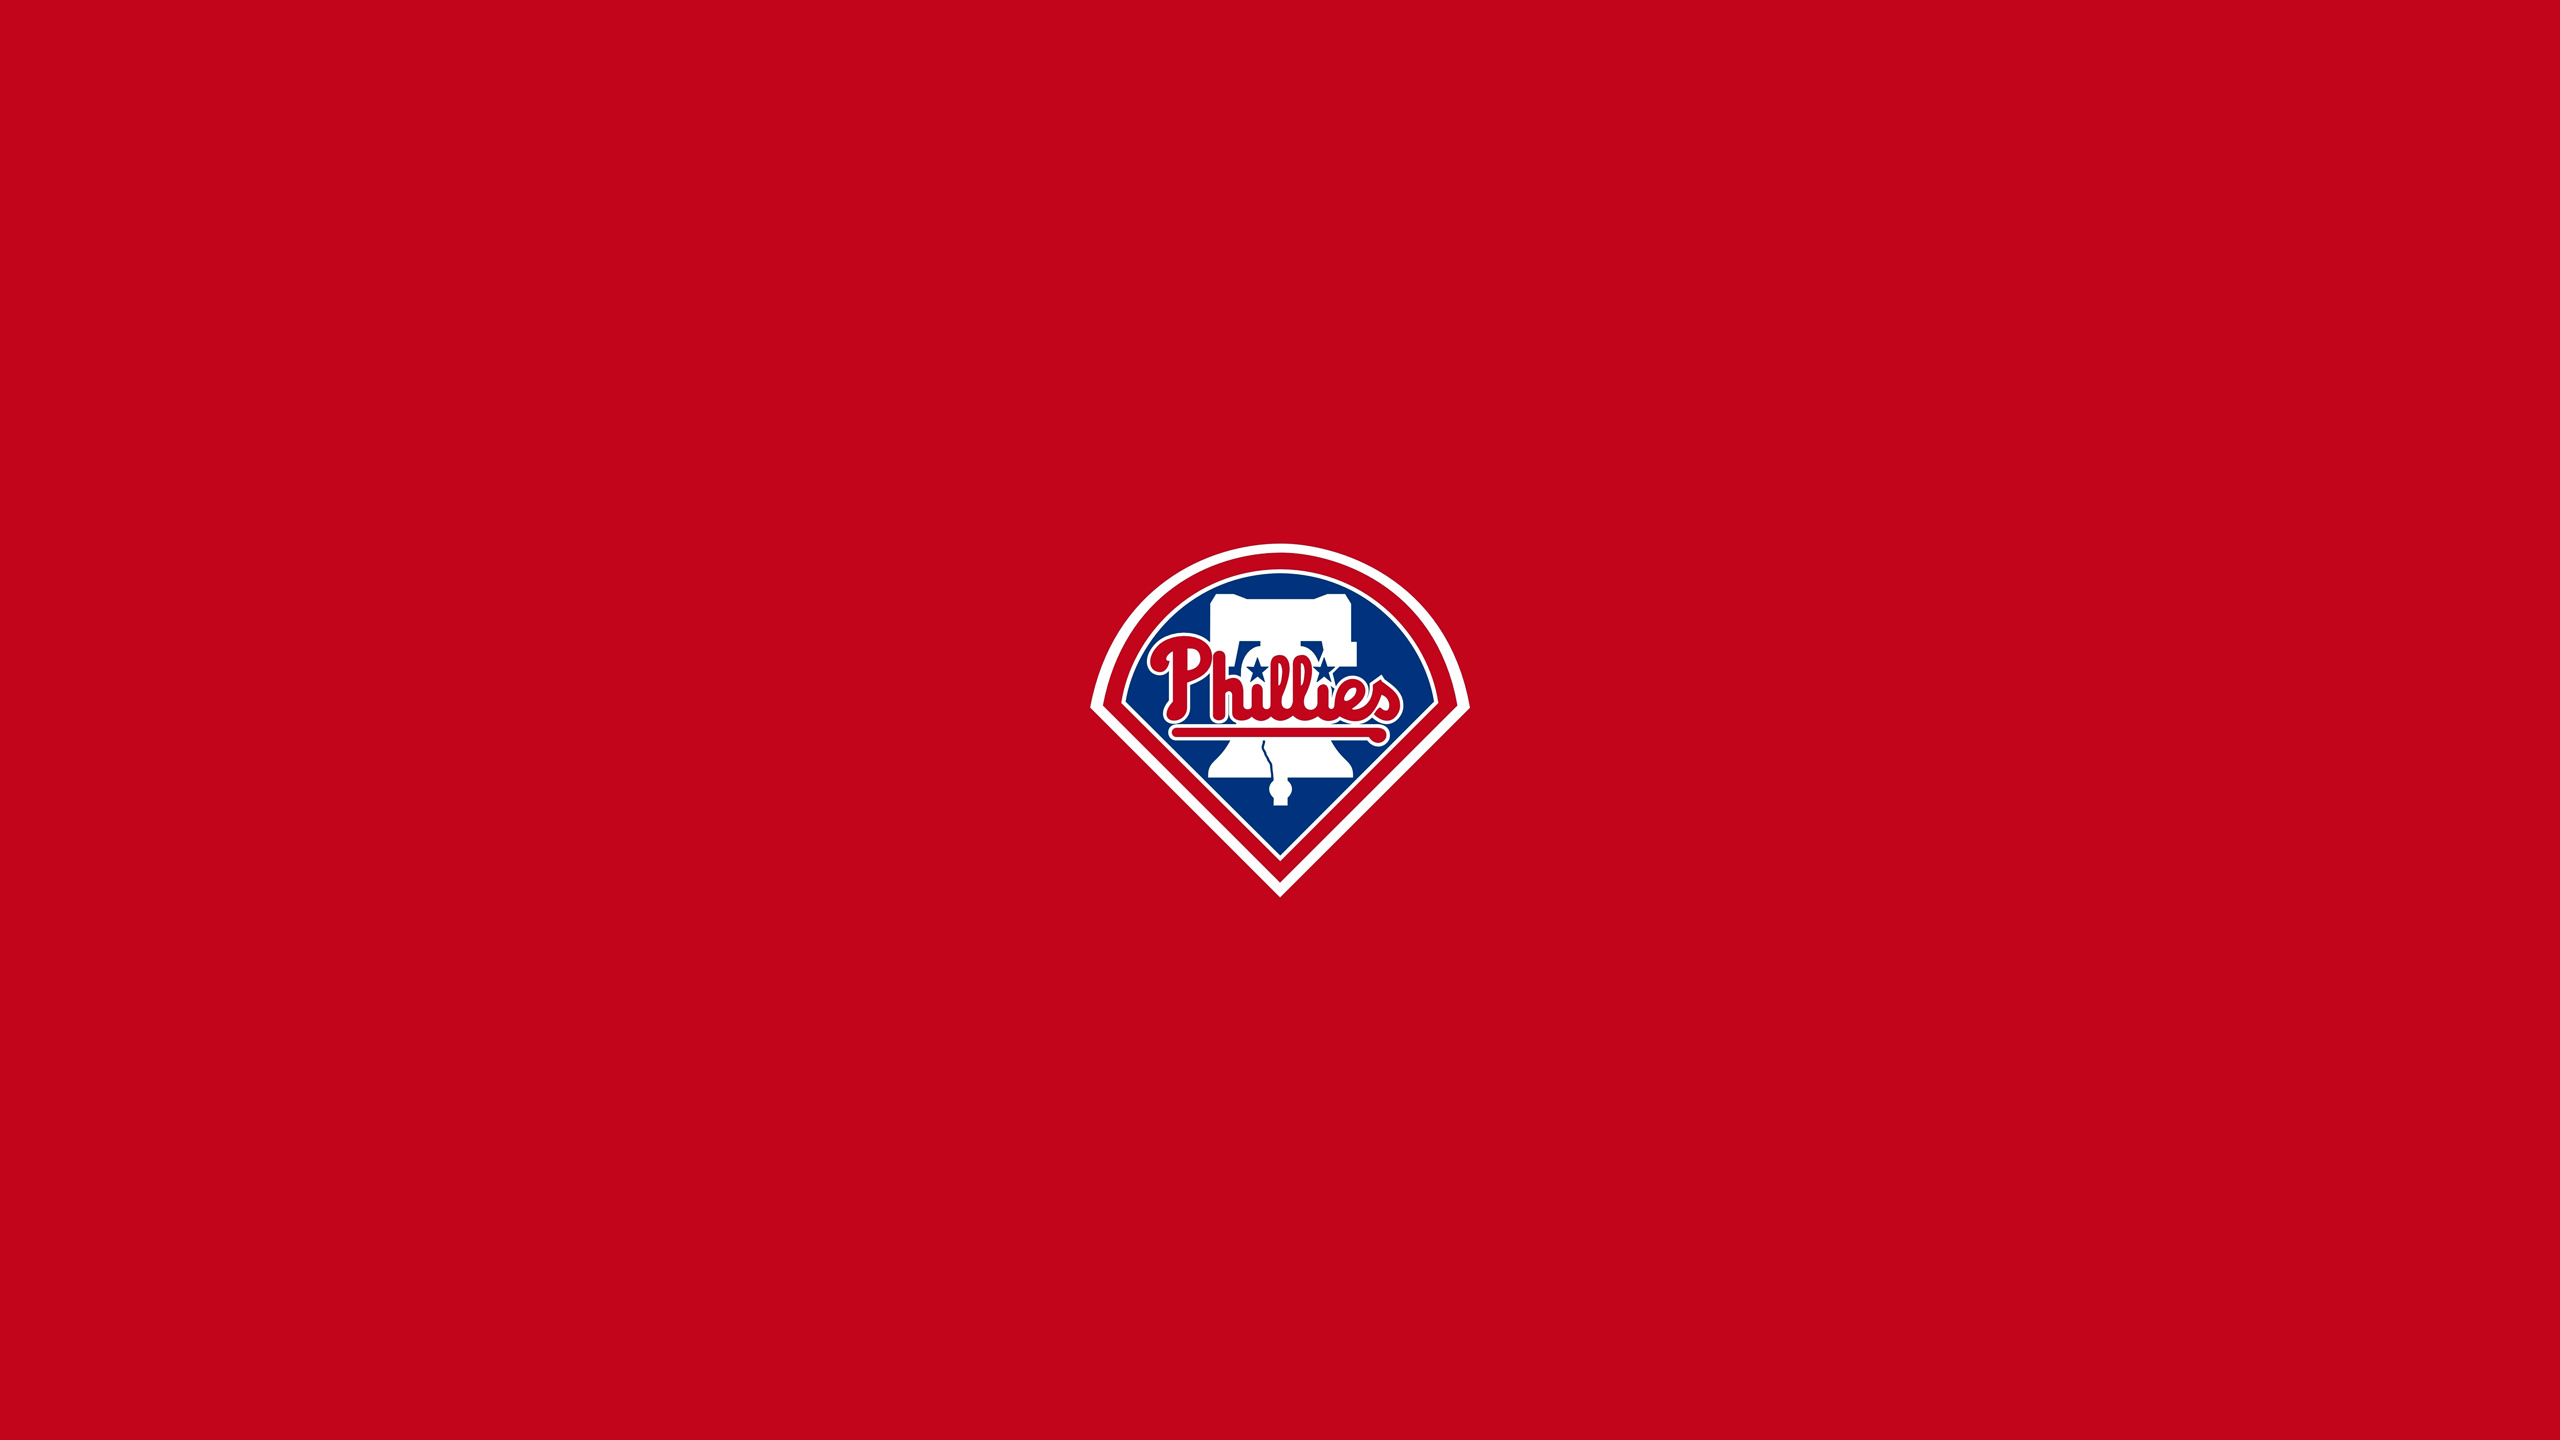 Philadelphia Phillies, Sports celebration, Fan loyalty, Baseball legends, 2560x1440 HD Desktop